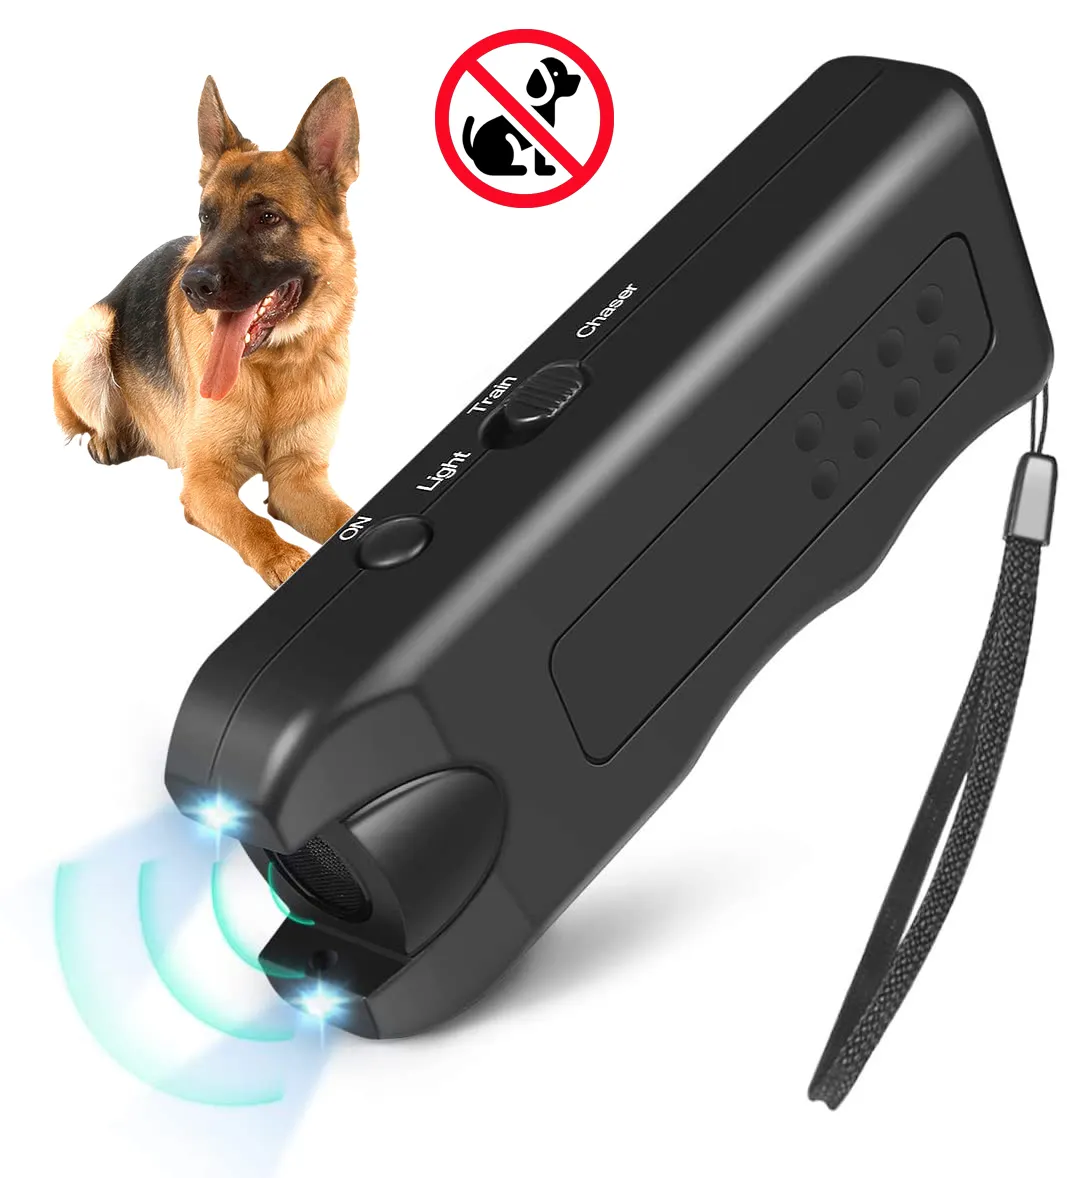 Pare latir dispositivo ultra-sônico cão casca dissuasor casca controle dispositivo handheld cão repelente treinador